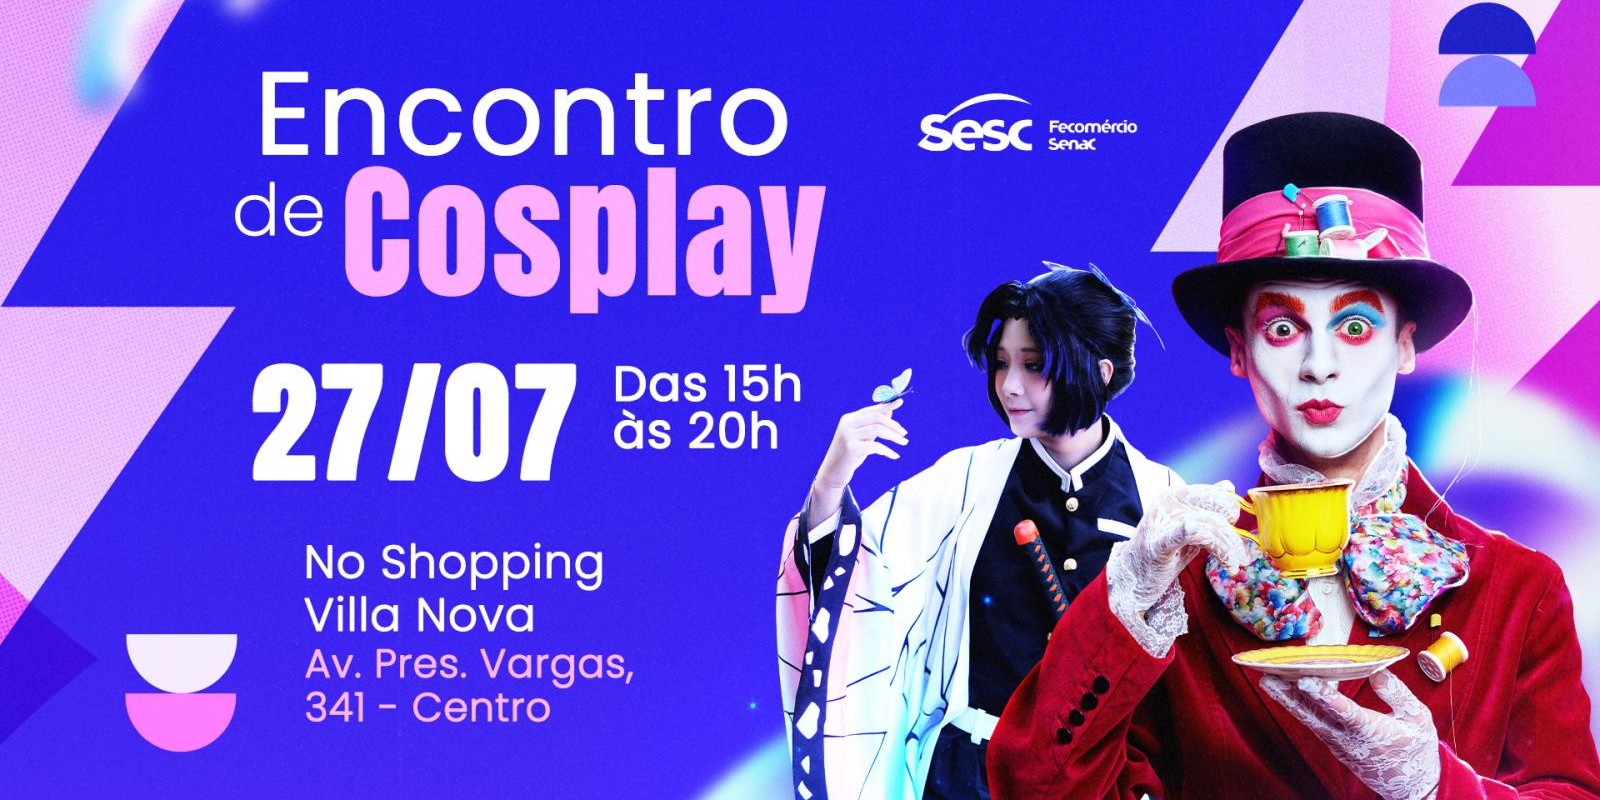 Sesc realiza concurso de cosplay no Villa Nova Shopping (Veja o regulamento)